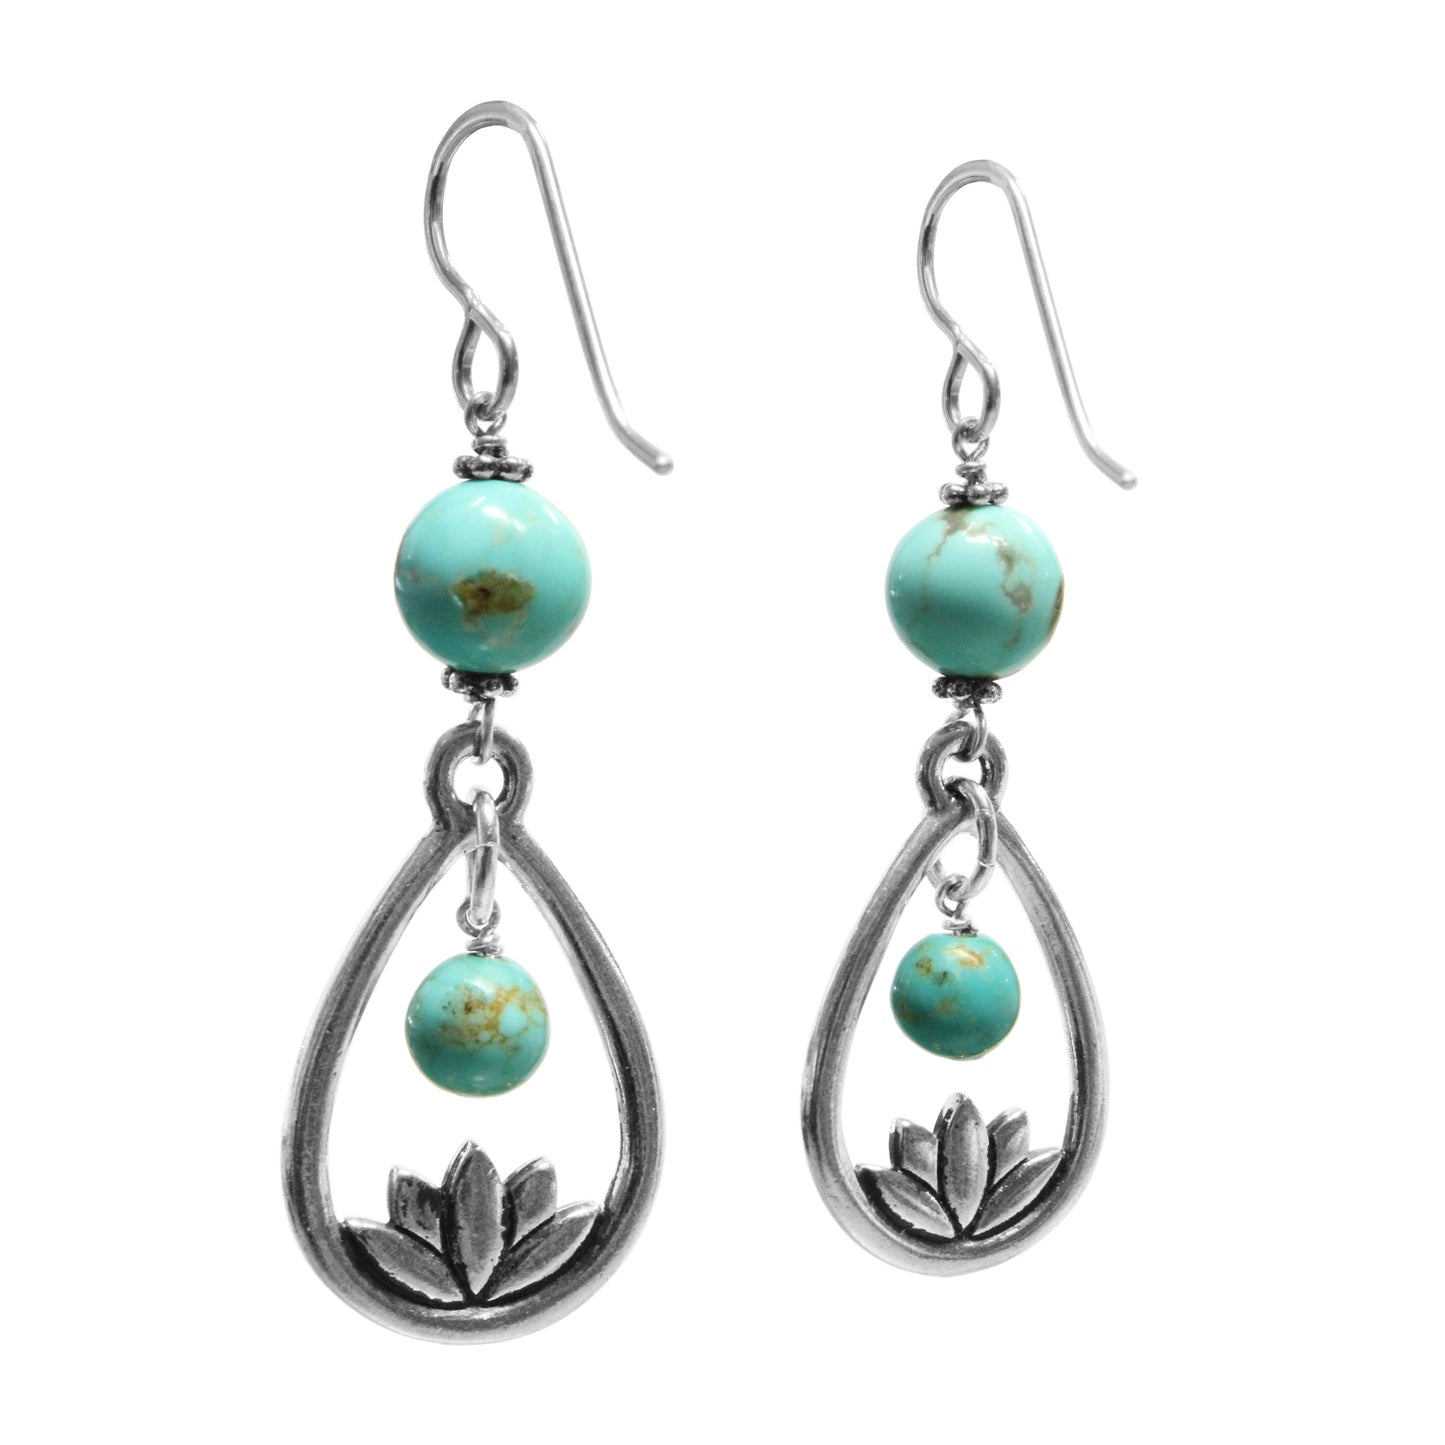 Lotus Earrings / 58mm length / #8 Mine turquoise gemstones / sterling silver hook earwires